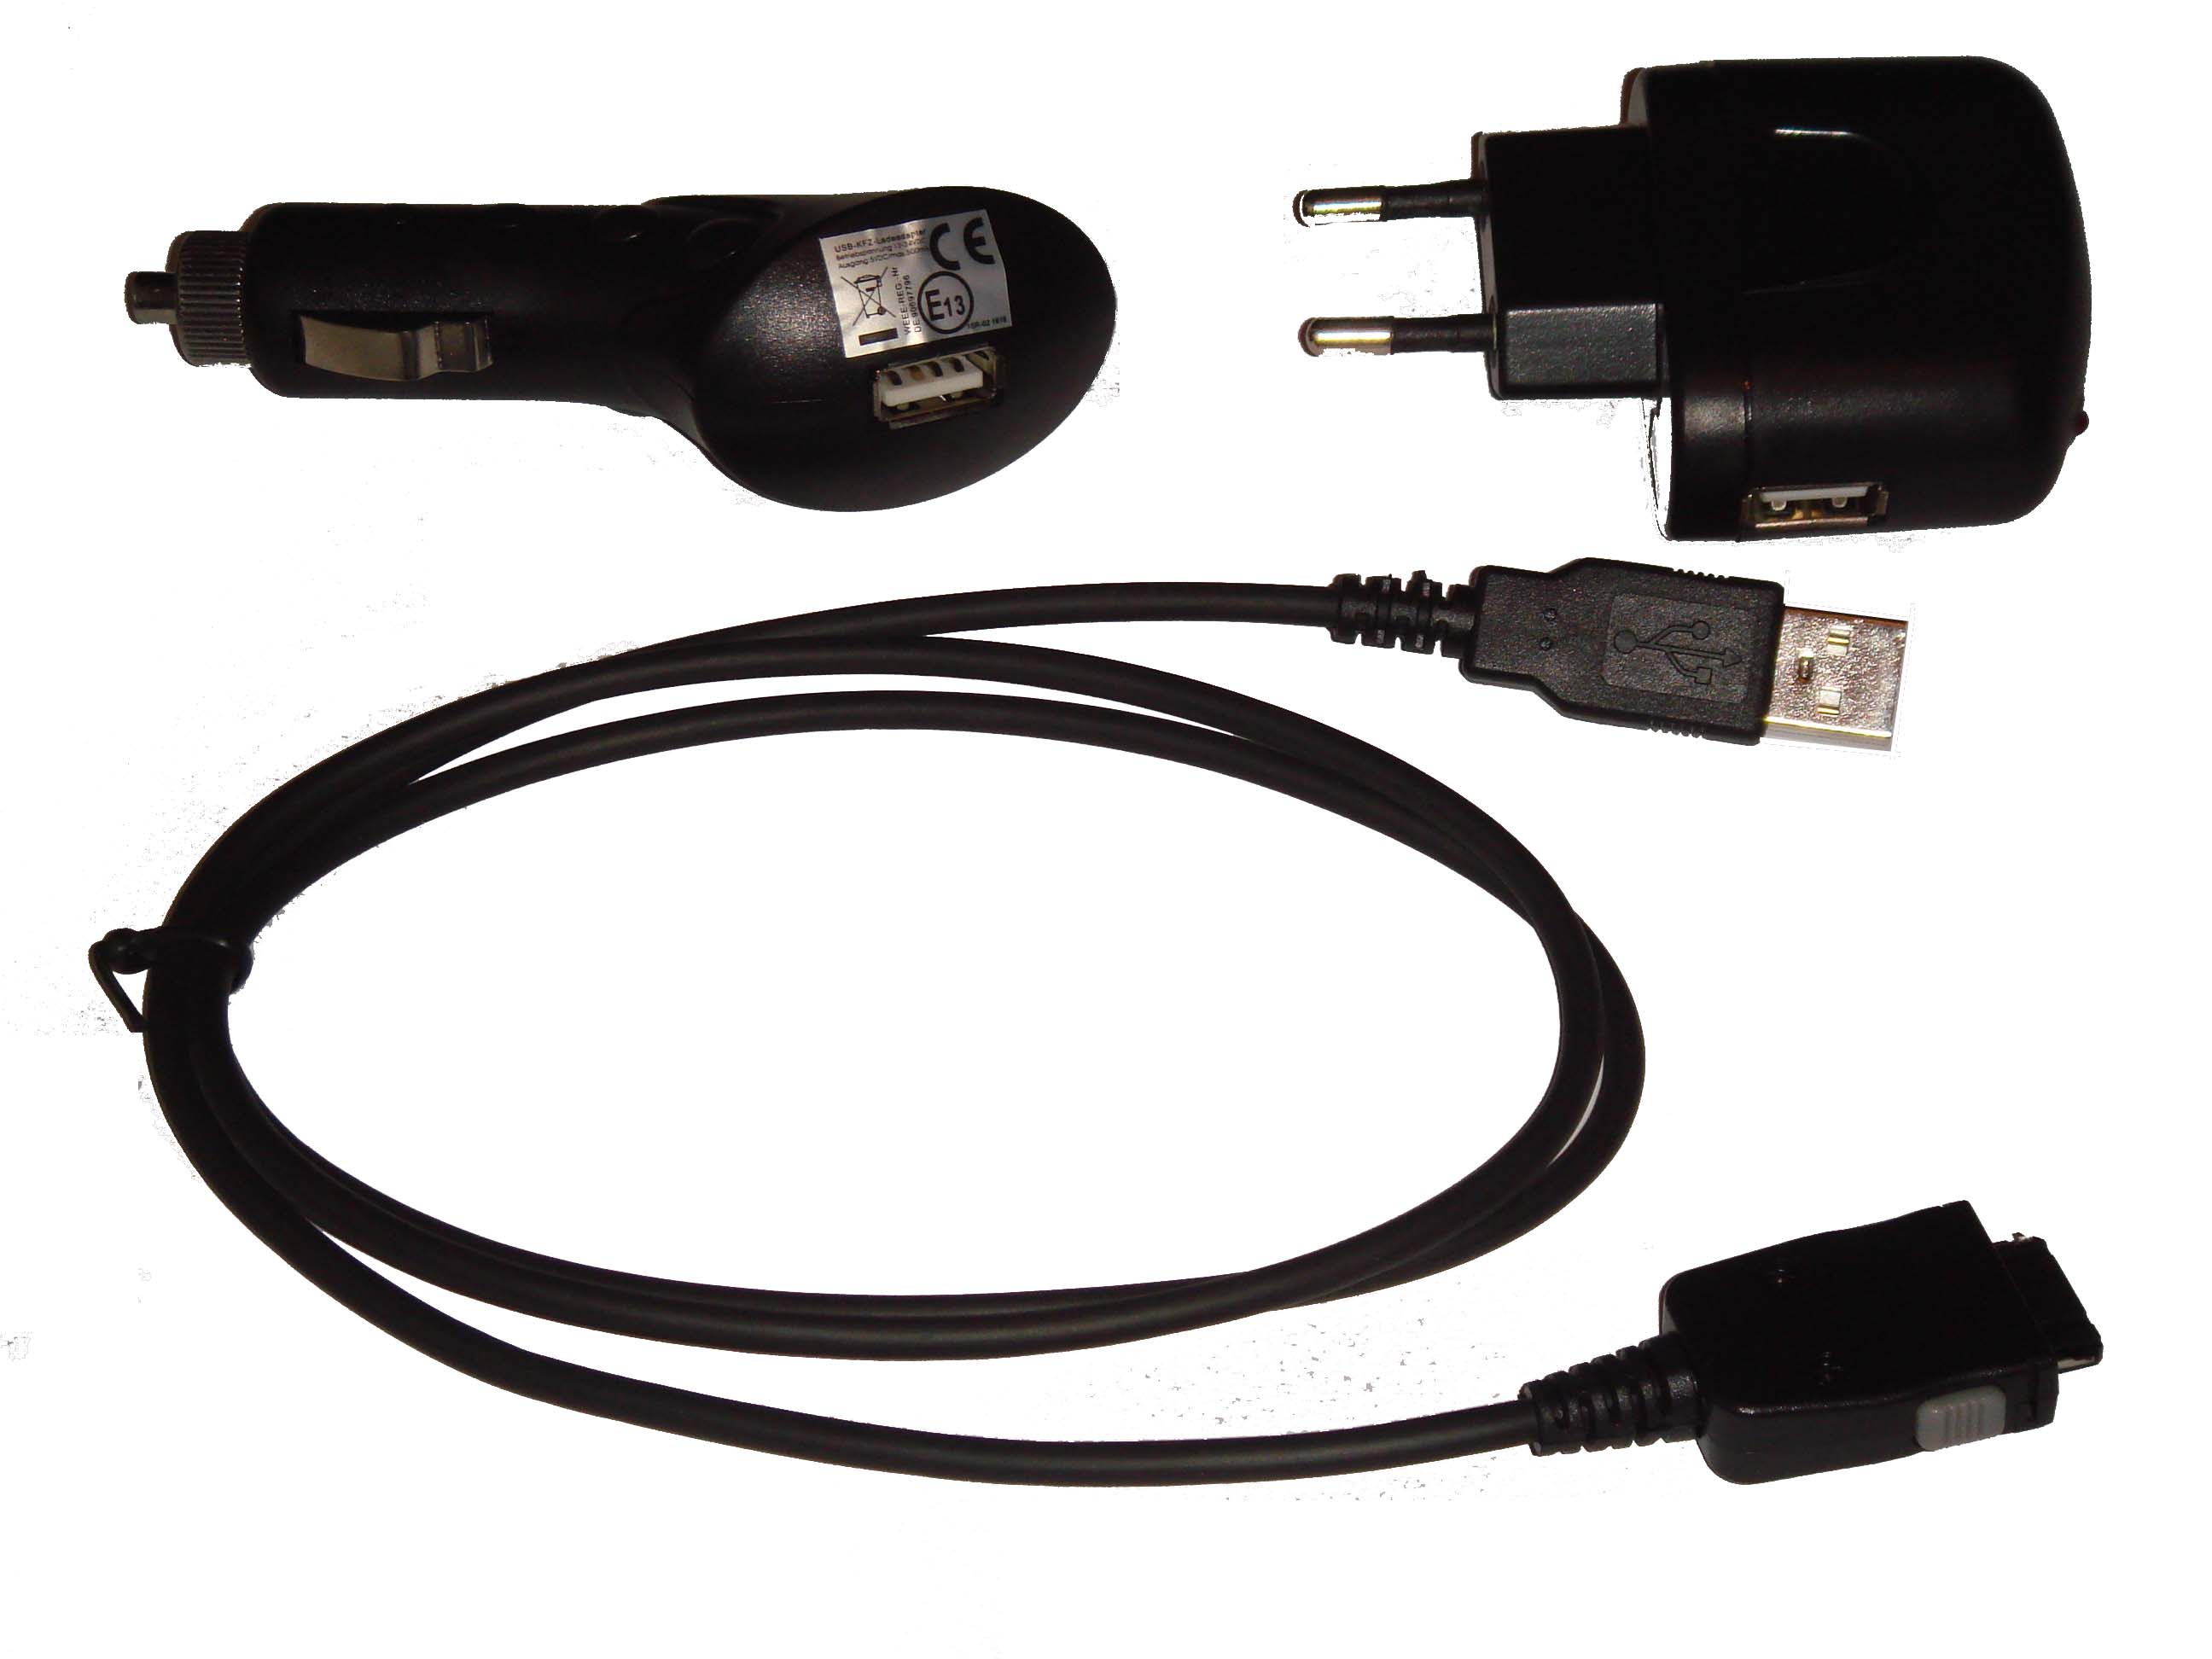 Set accesorio carga compatible con Yakumo Delta X navi - adaptador carga coche, red, cable datos USB